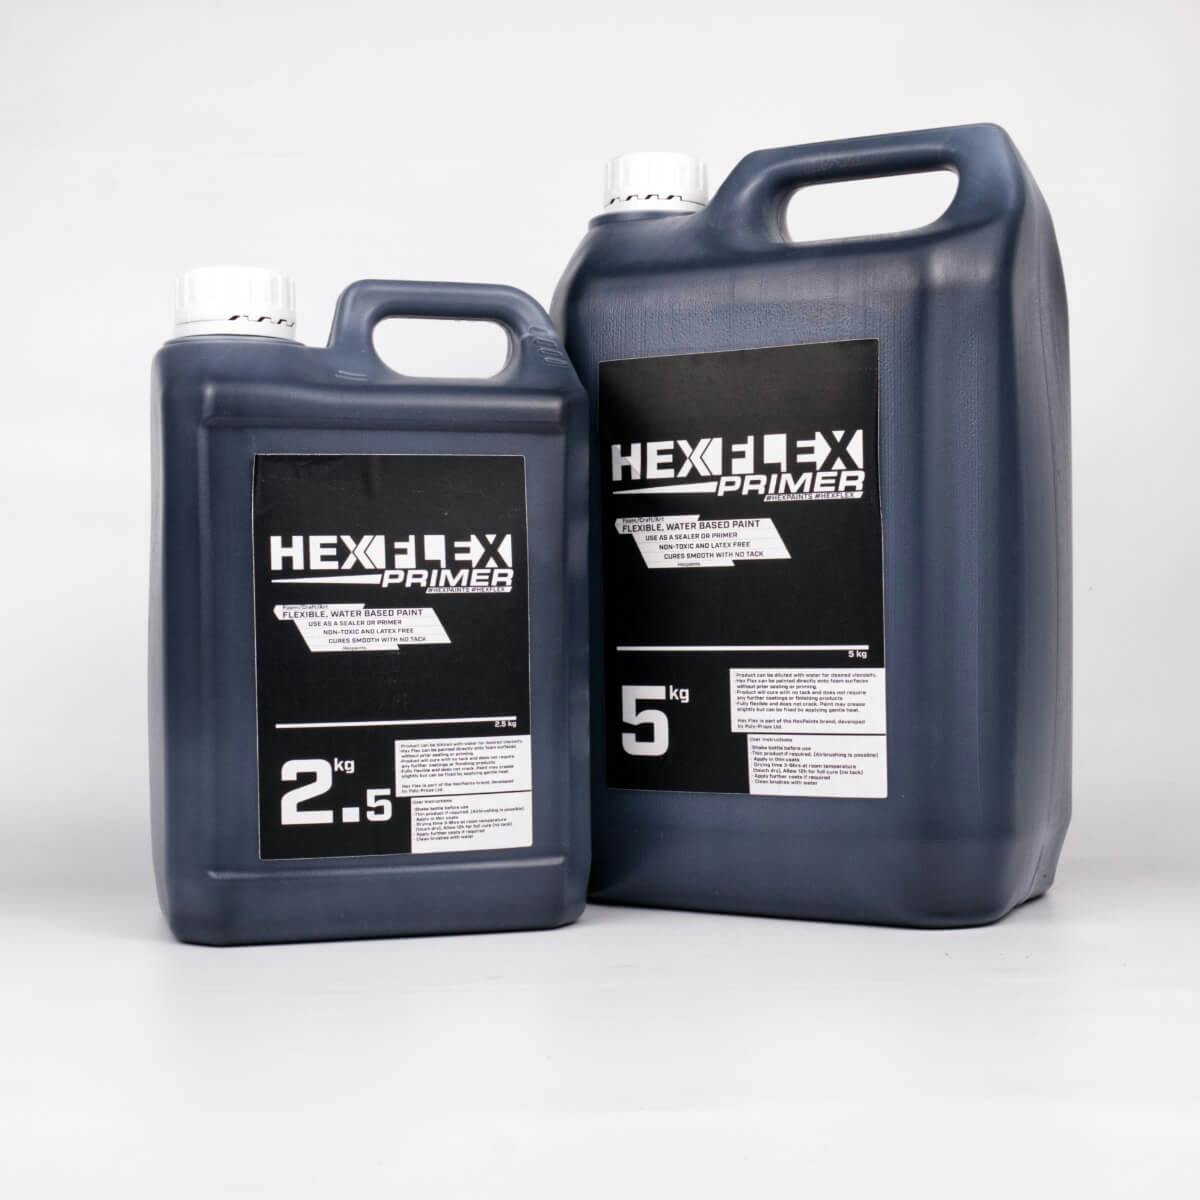 Produkt HexFlex Primer v černé barvě